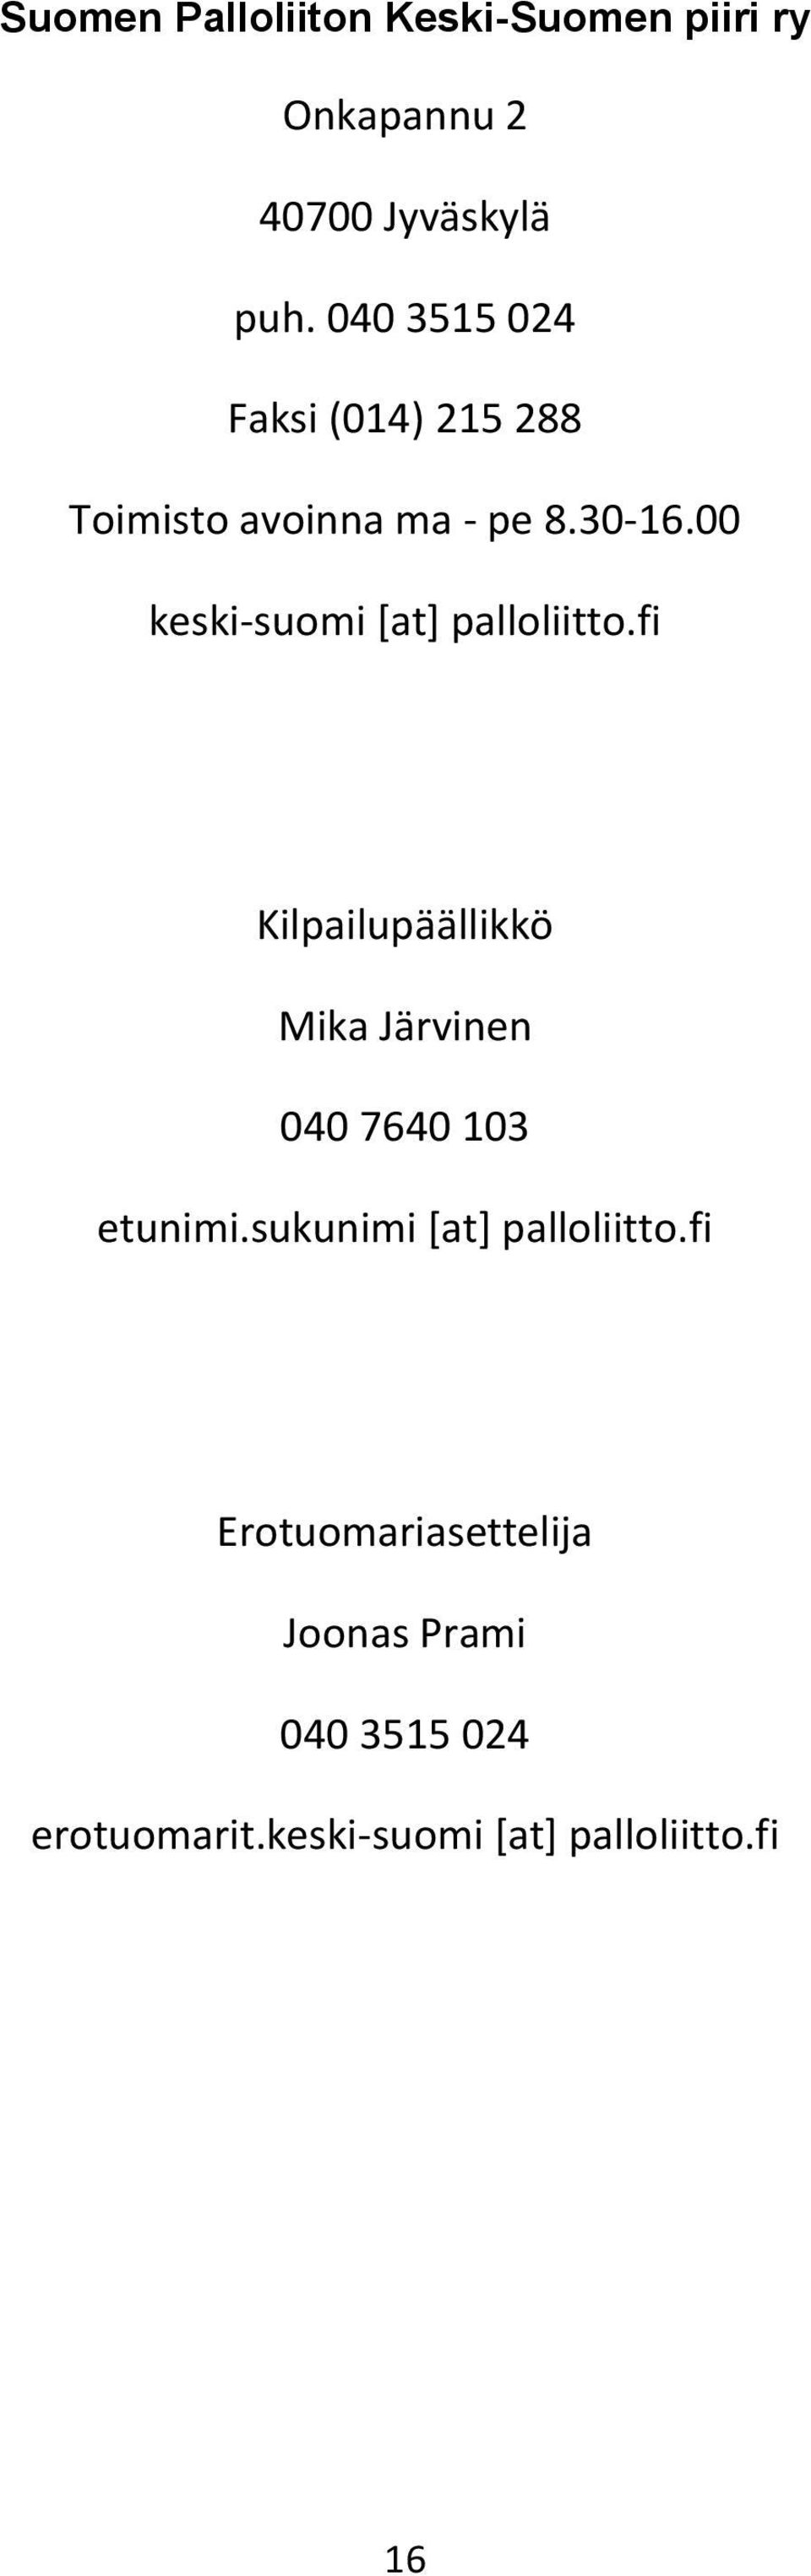 00 keski-suomi [at] palloliitto.fi Kilpailupäällikkö Mika Järvinen 040 7640 103 etunimi.